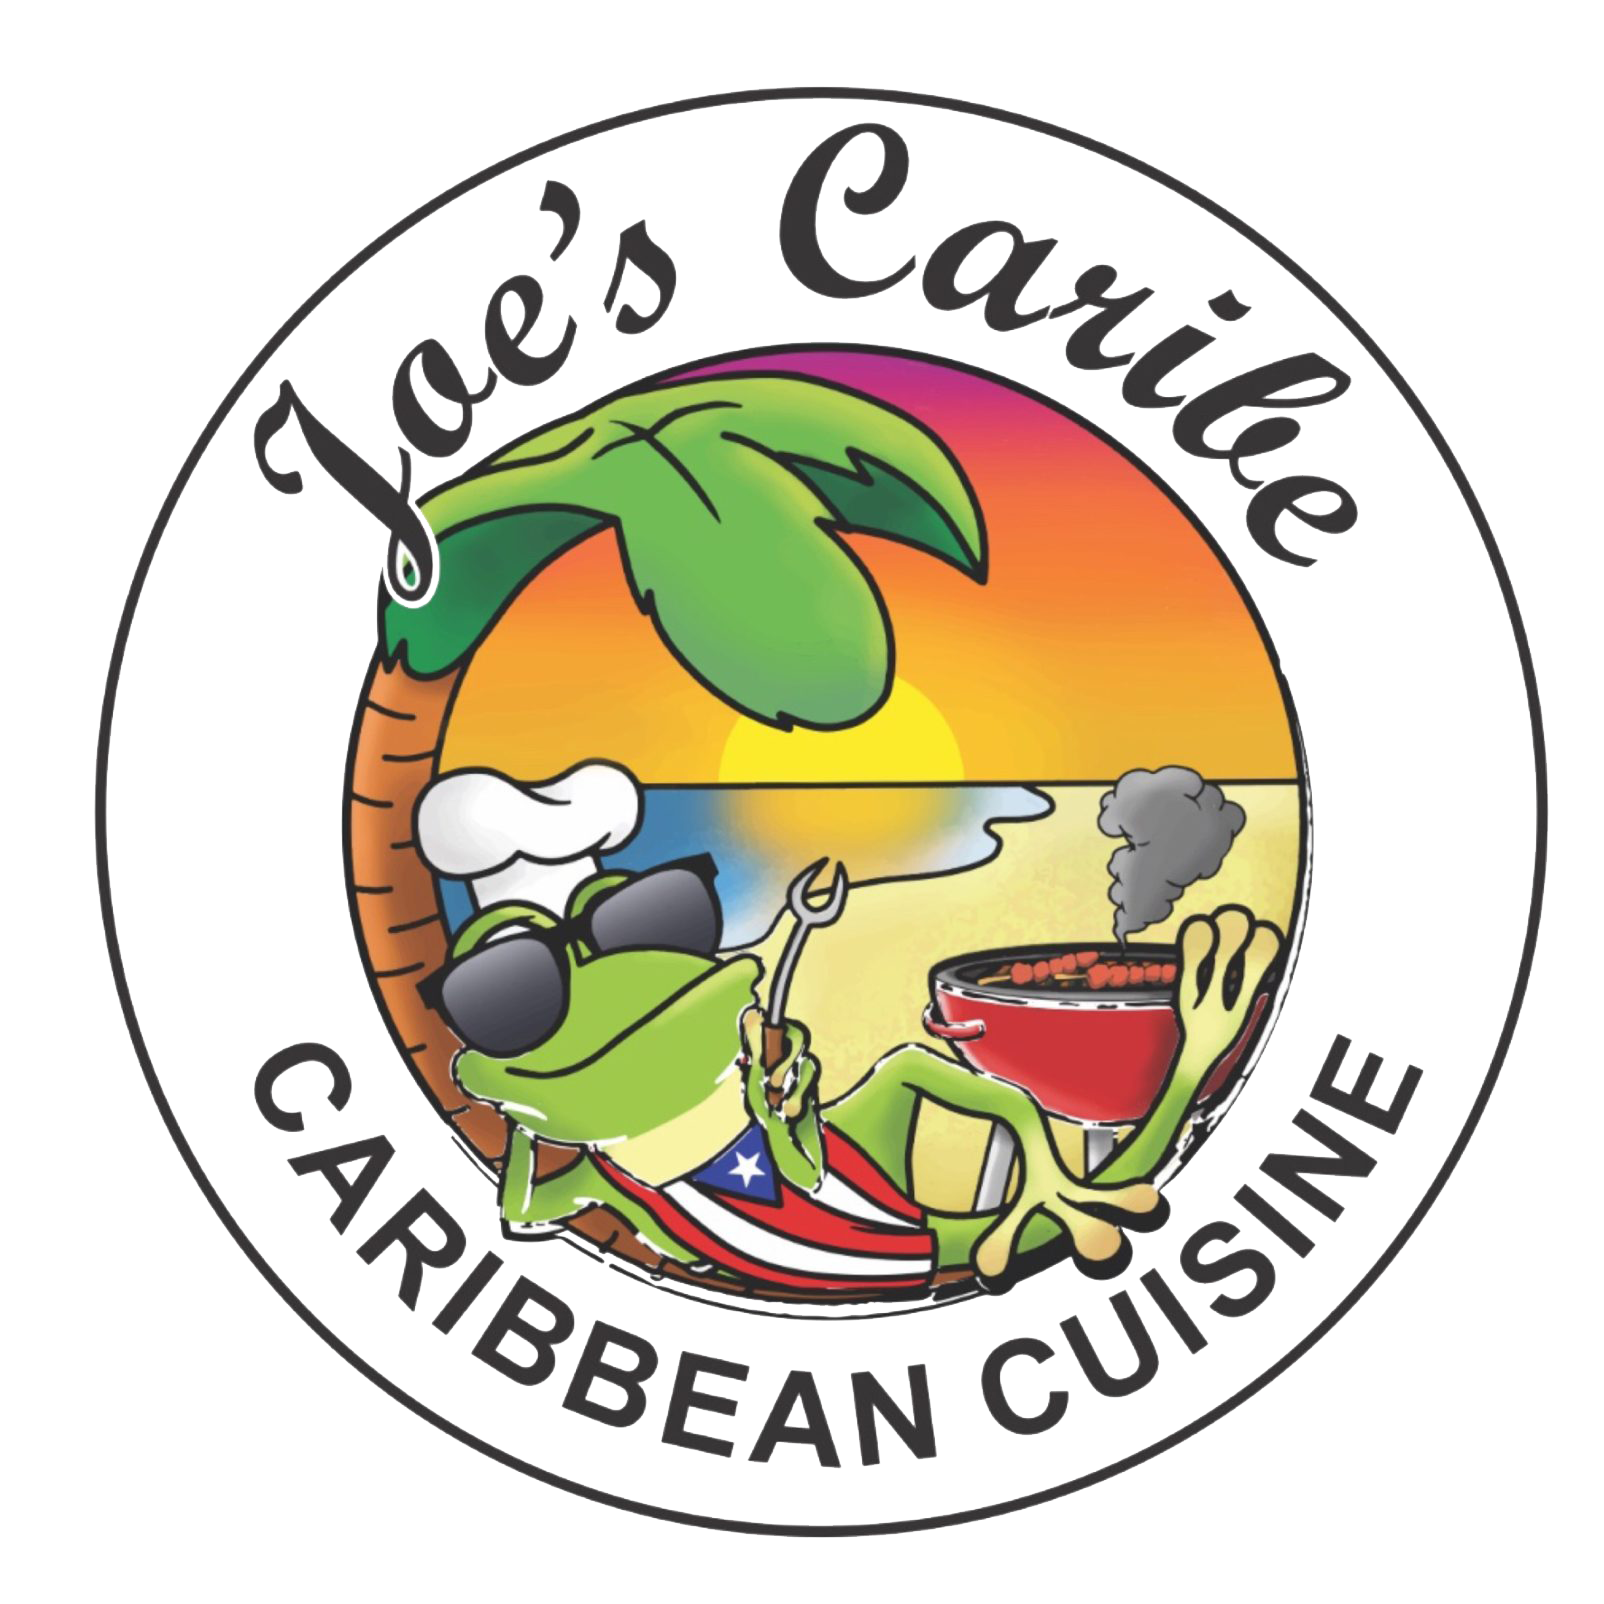 Joe's Caribbean Cuisine